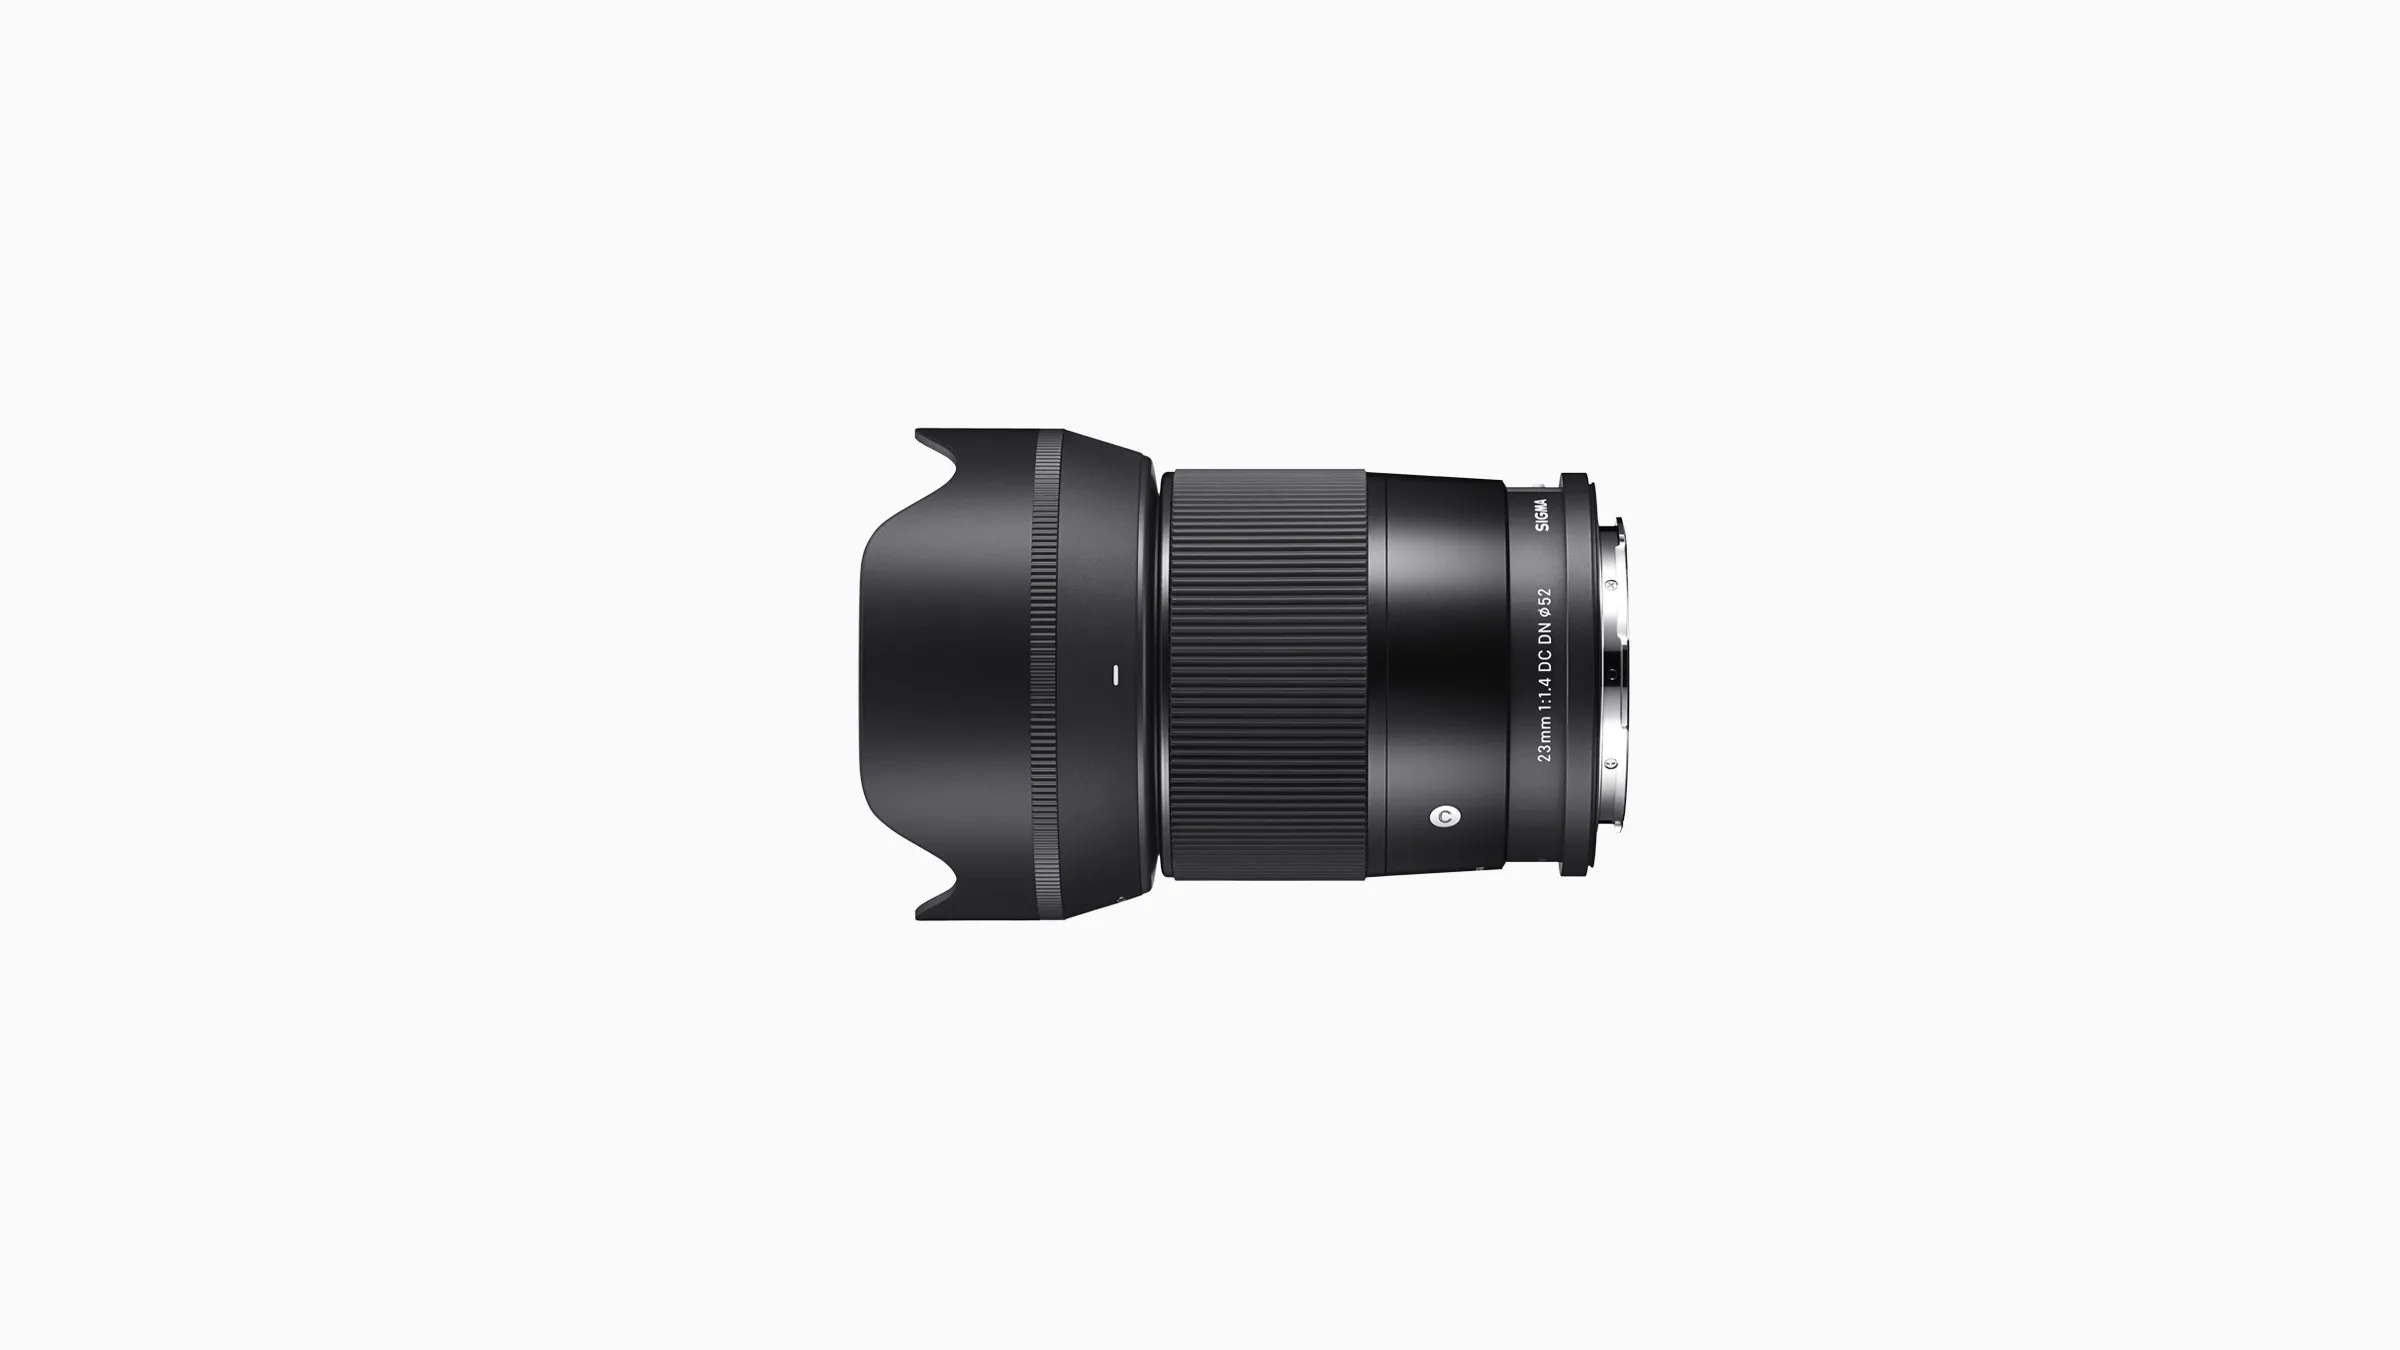 Sigma ra mắt ống kính 23mm F1.4 DC DN dành cho các máy ảnh APS-C ngàm E, ngàm X và ngàm L